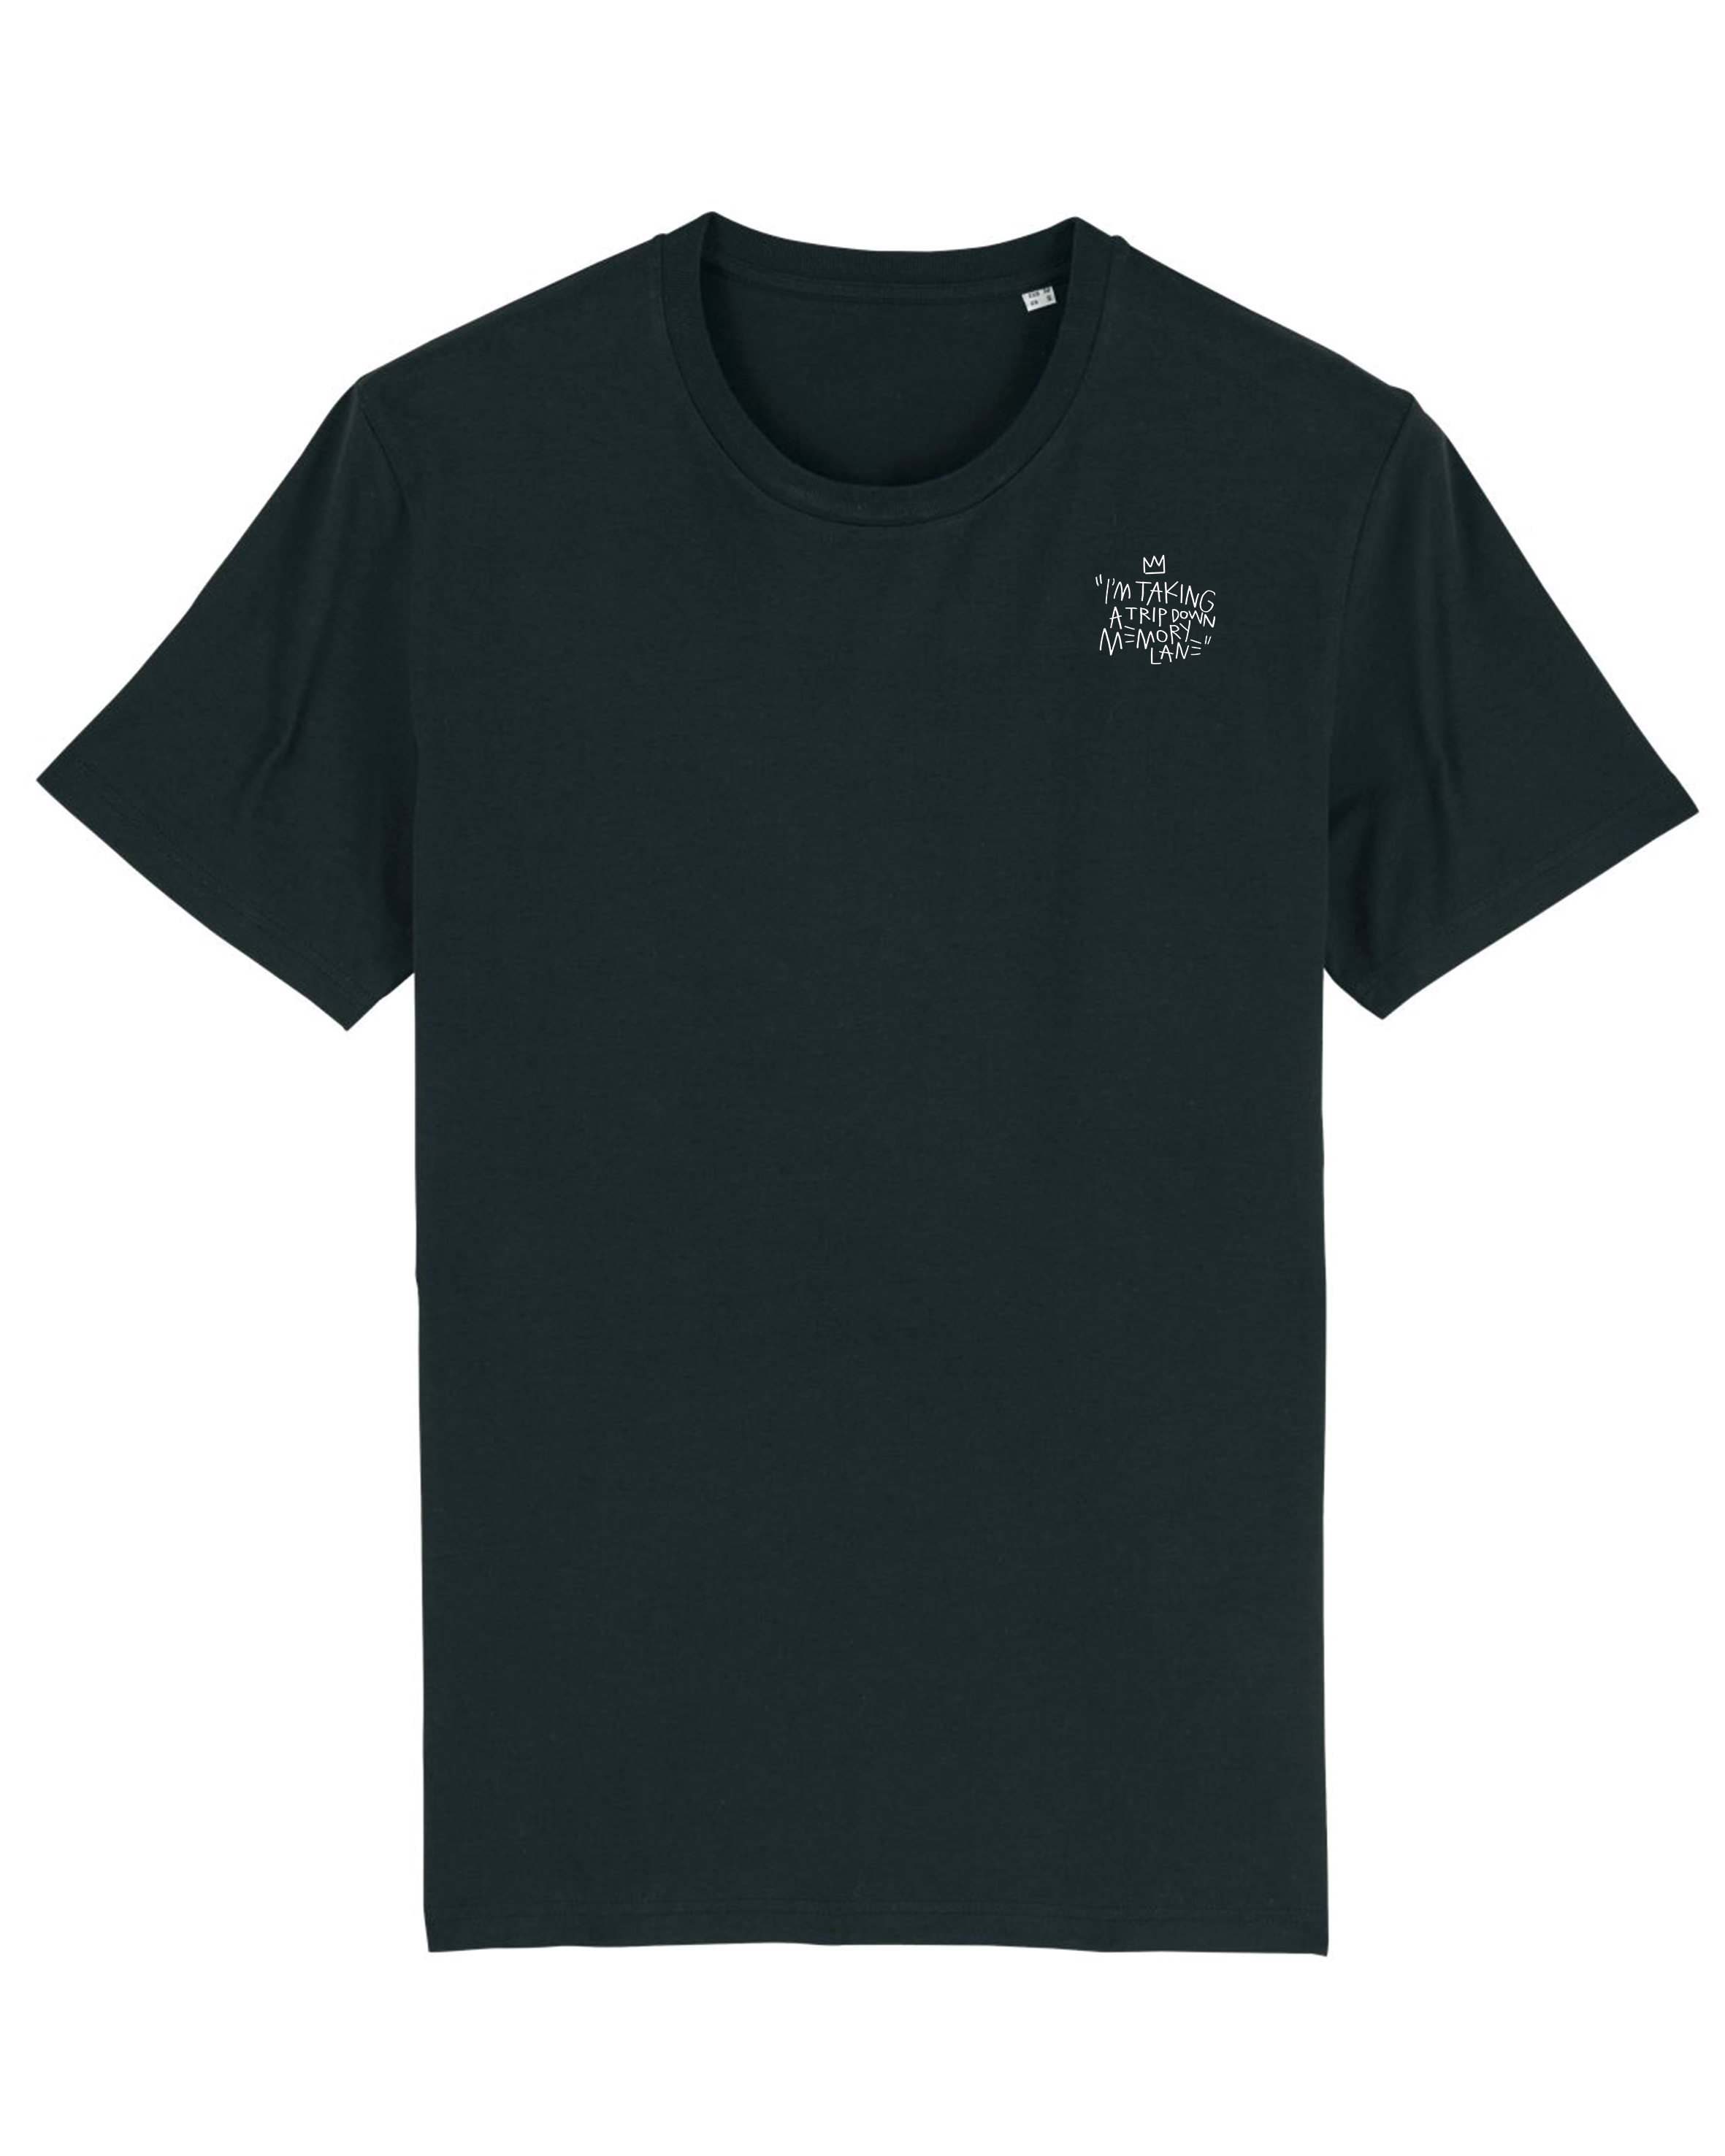 Kleding Unisex kinderkleding Tops & T-shirts Rock print Unisex zwart overhemd Biologisch overhemd 